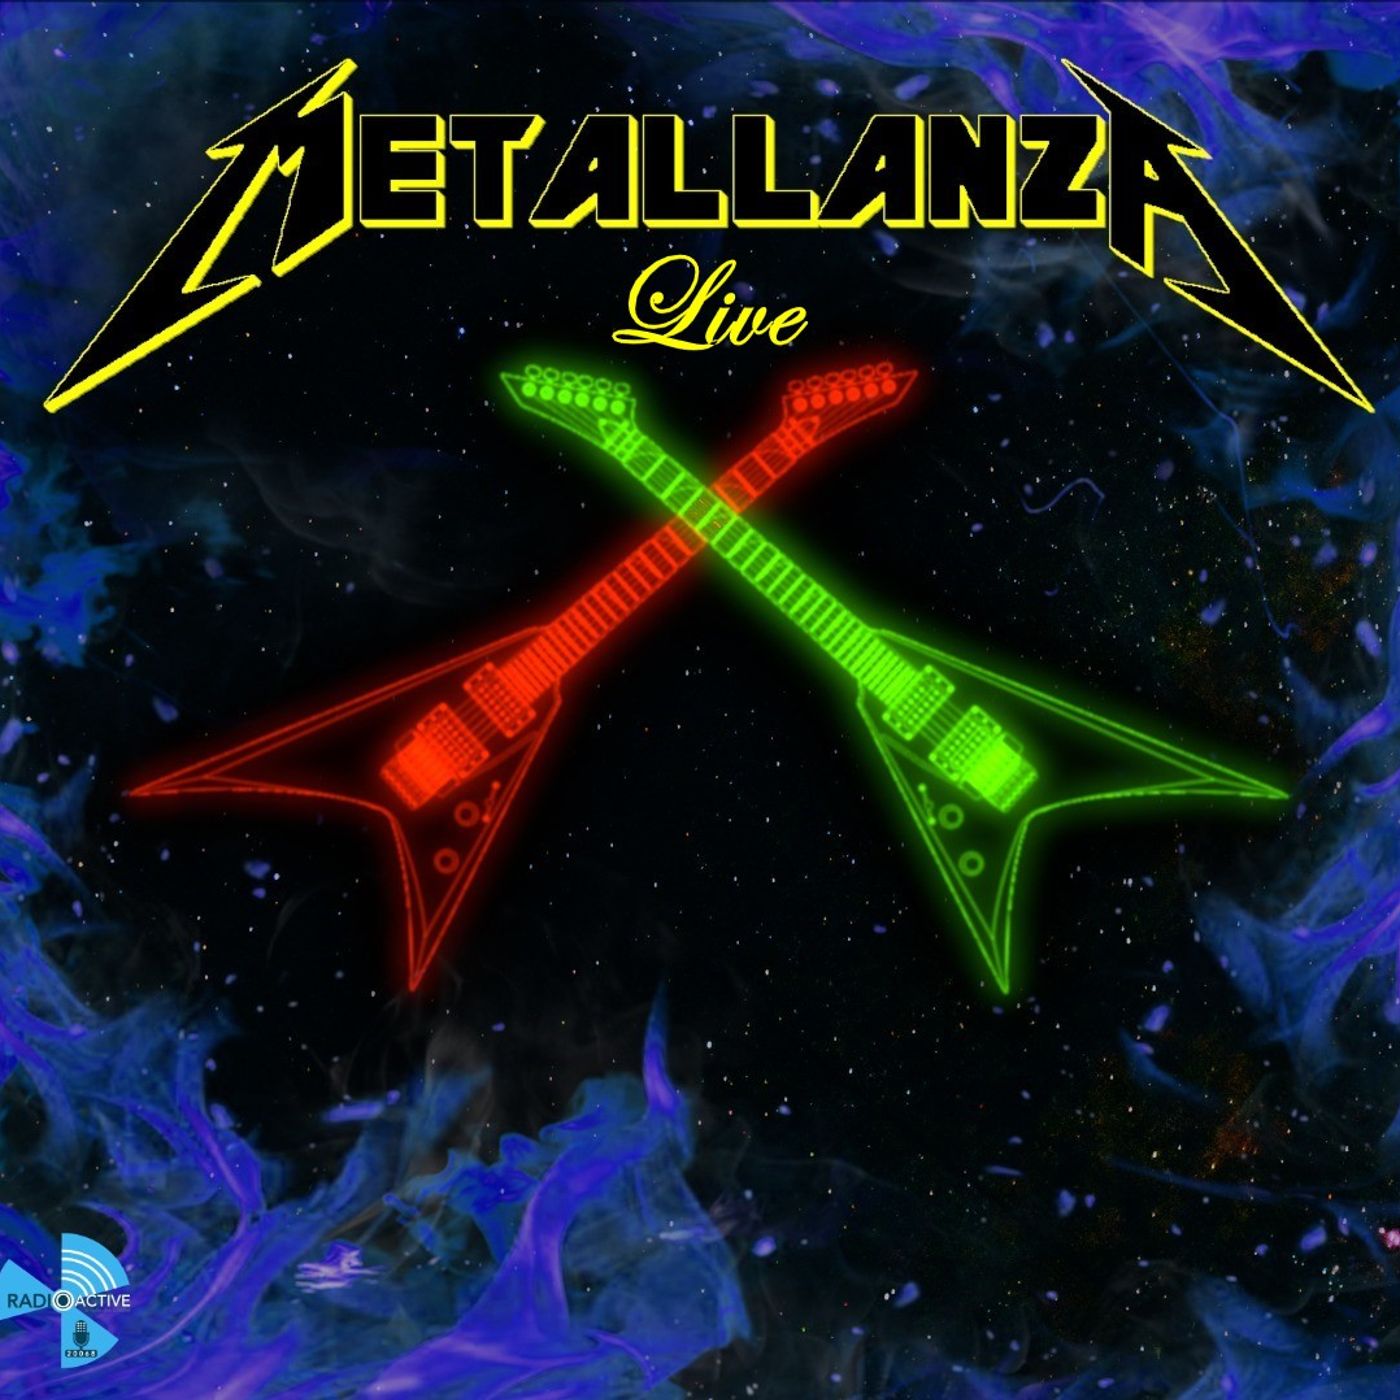 Metallanza Live